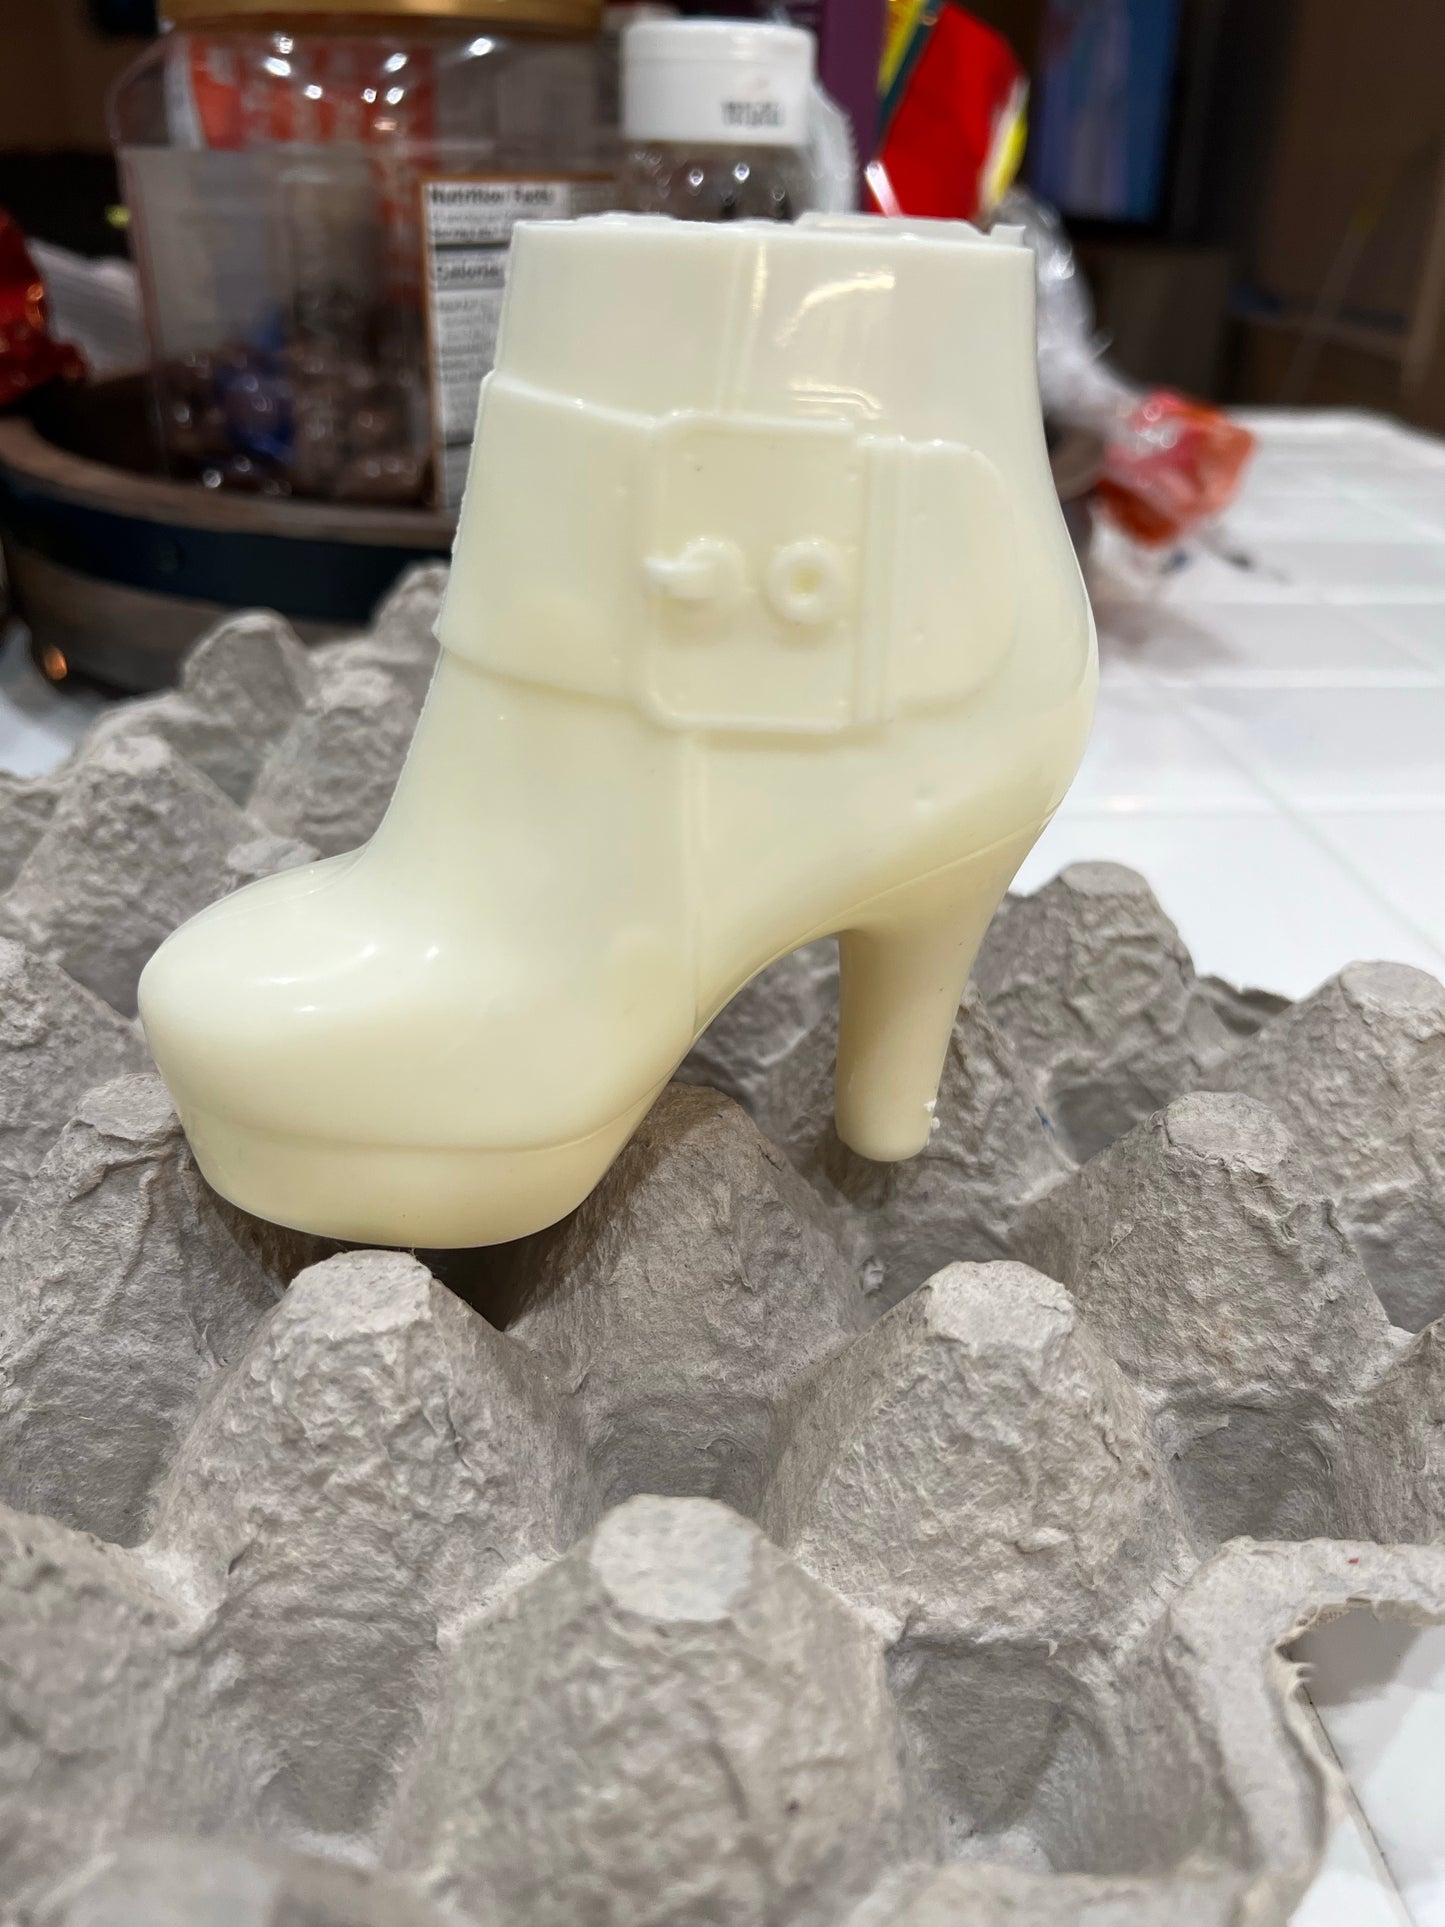 Boot Bootie Heel 3D - Chocolate Mold